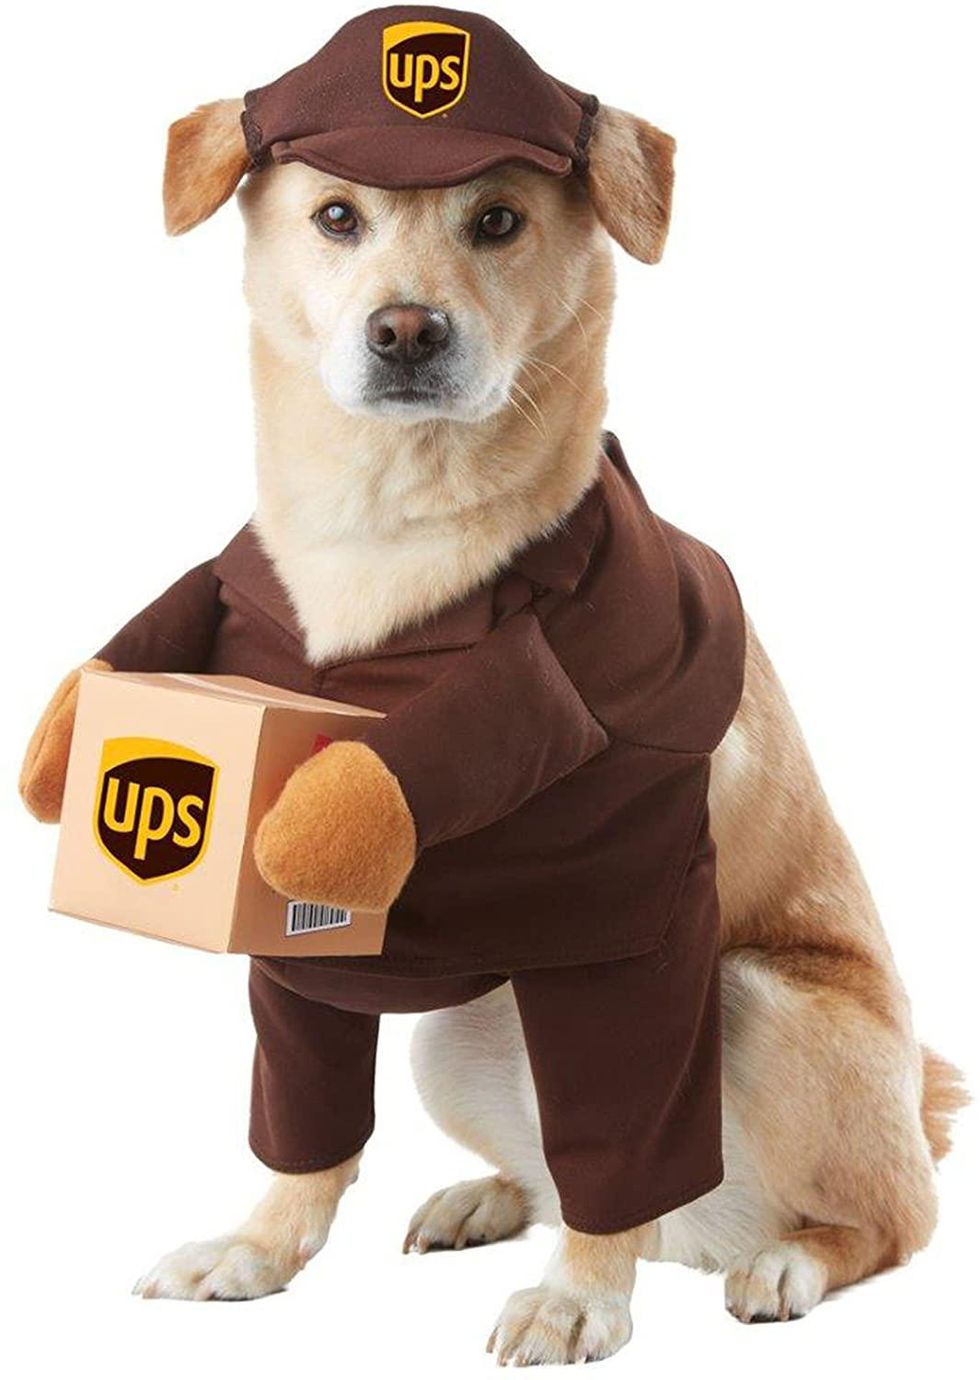 UPS dog costume